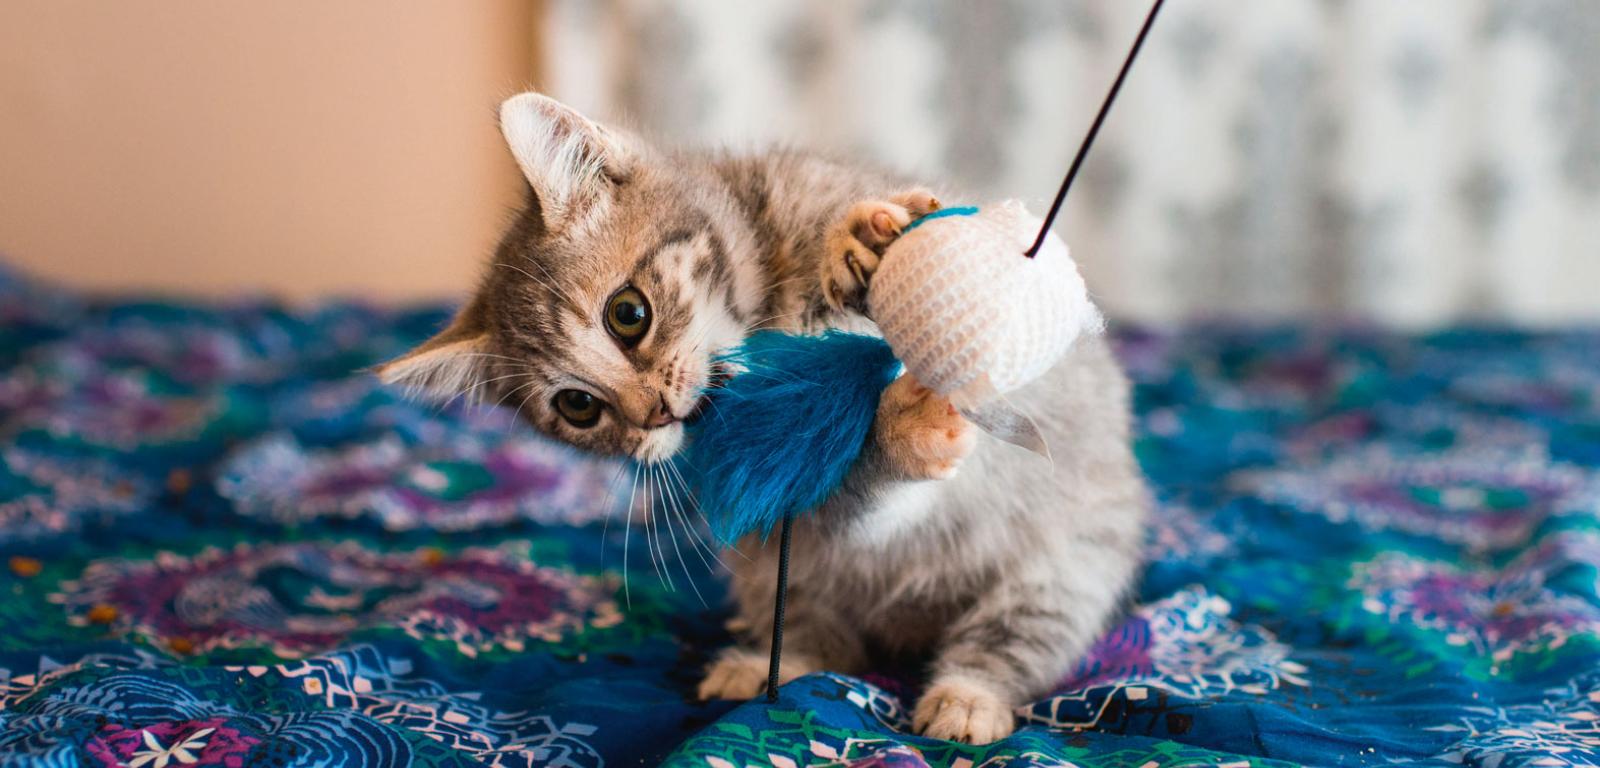 Dzięki zabawie kocięta uczą się sztuki polowania, niezbędnej w doros­łym życiu.